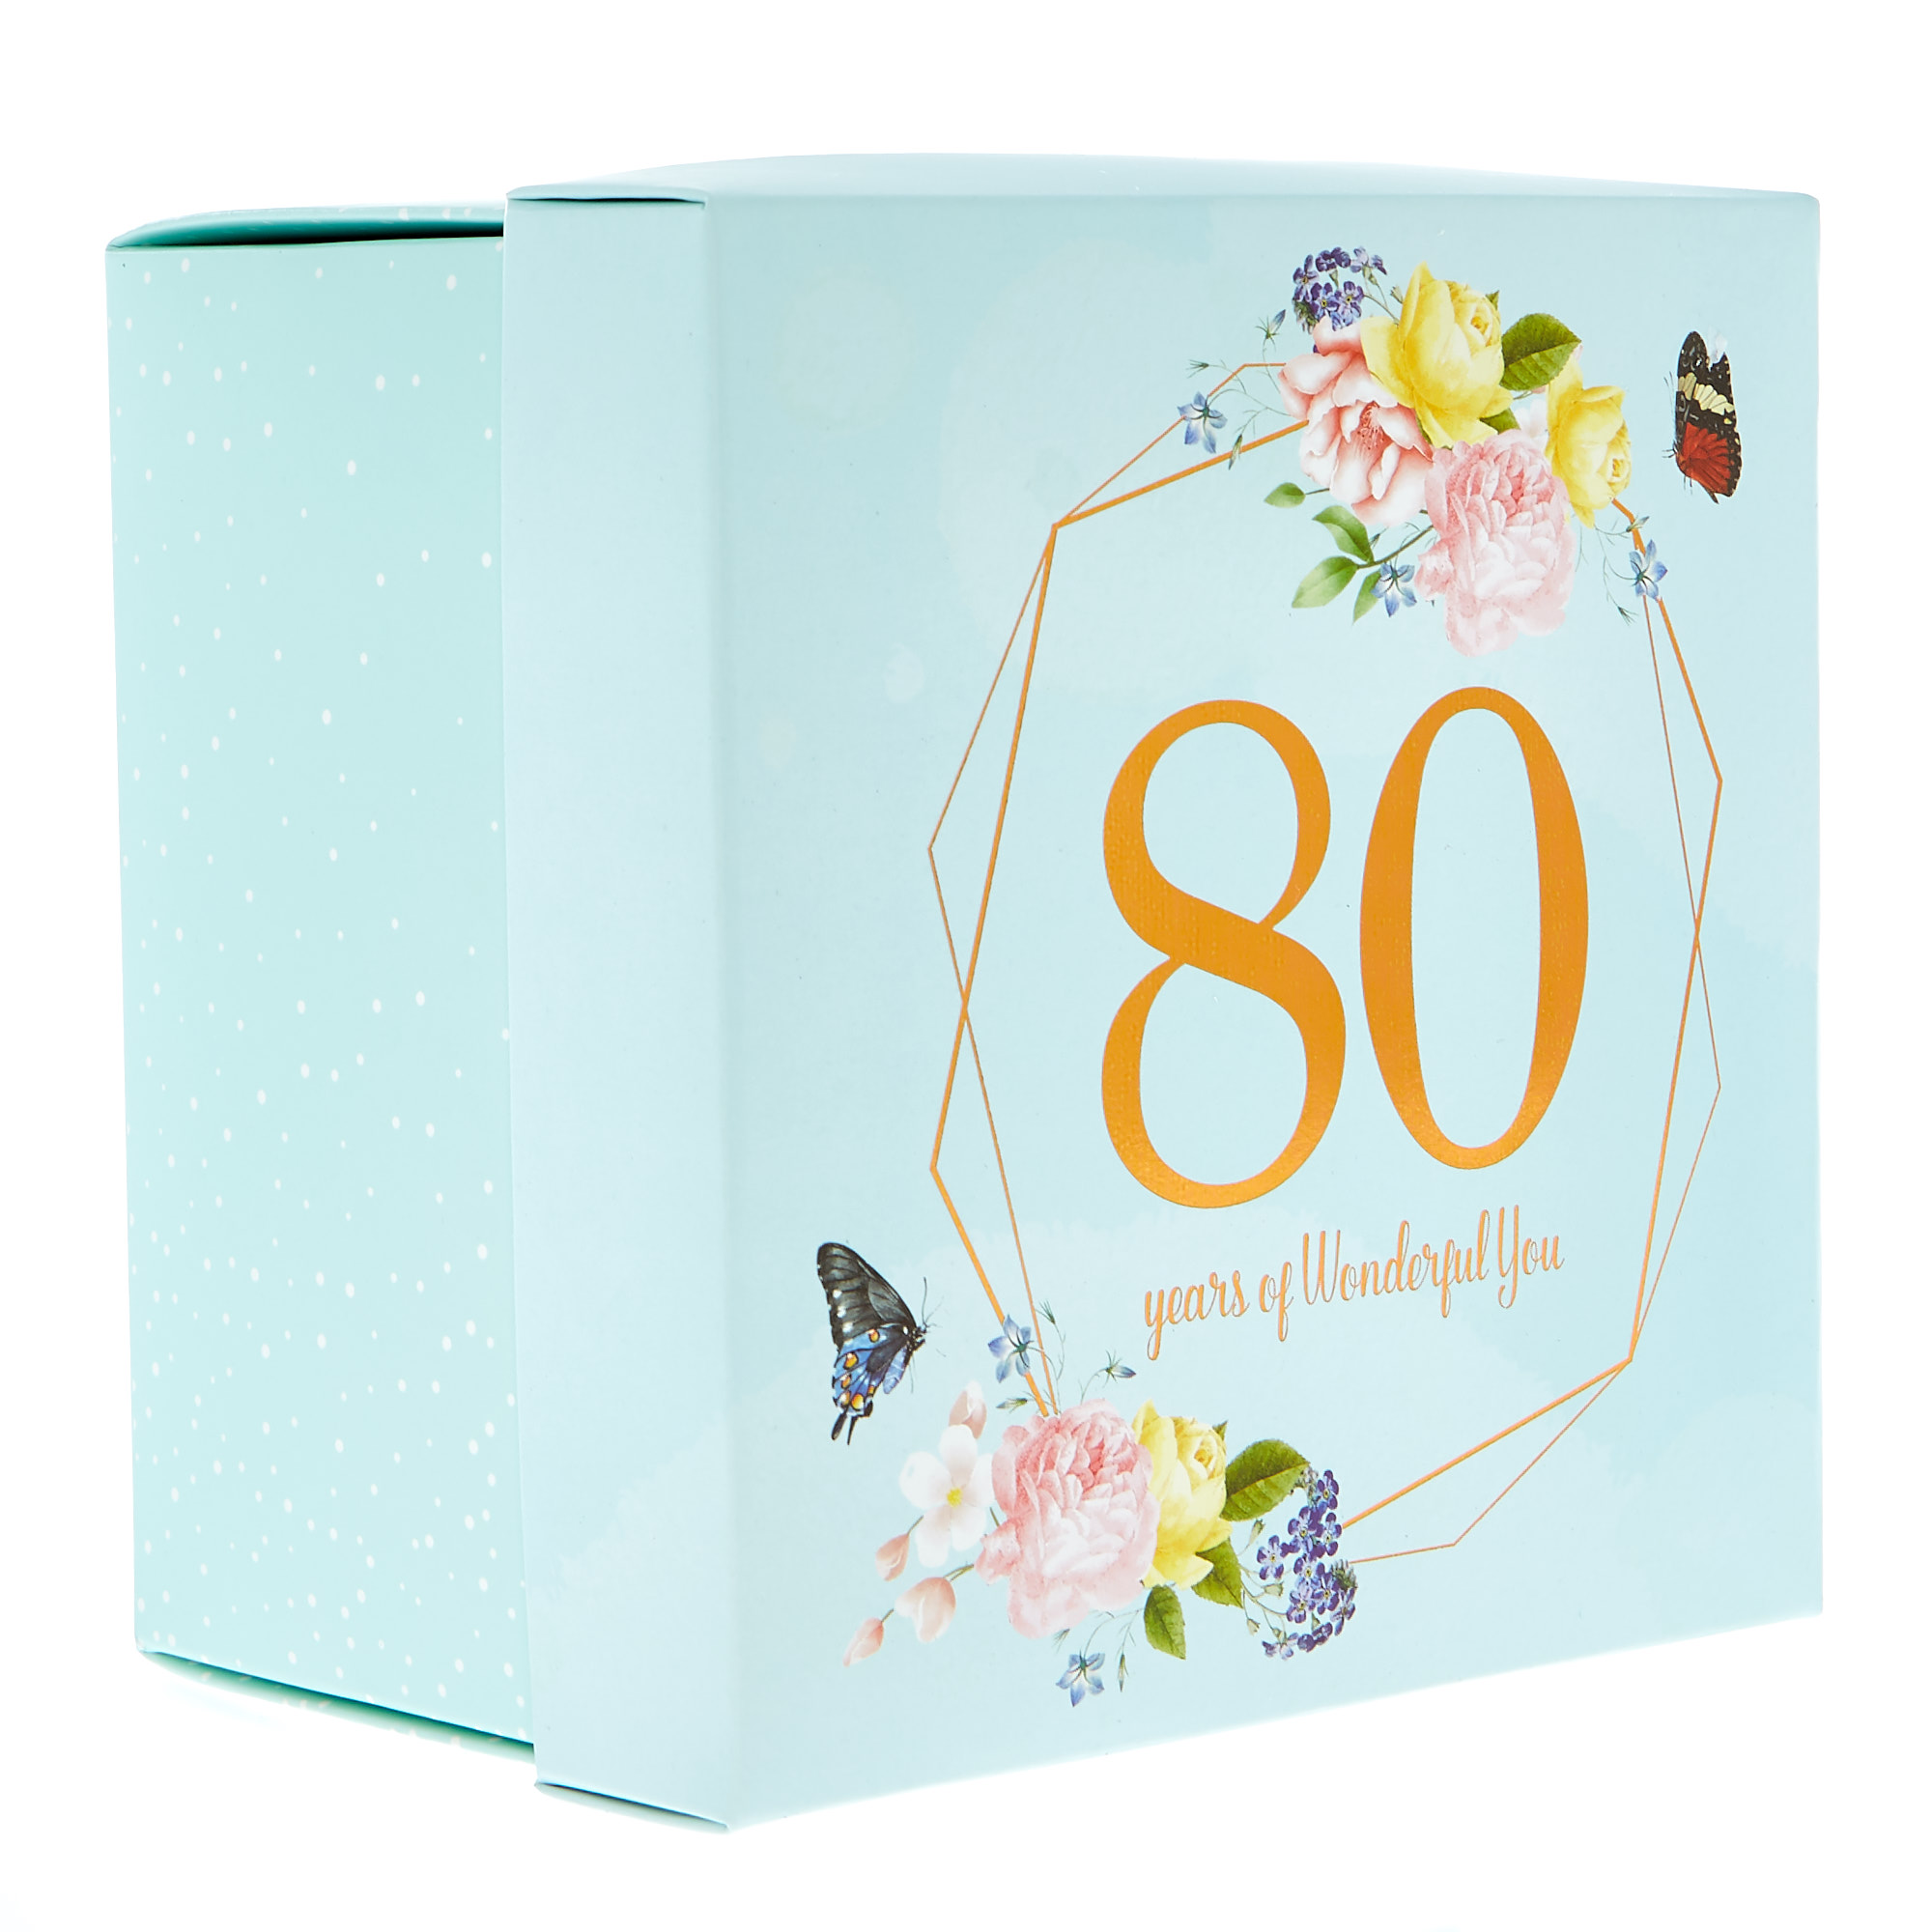 80th Birthday Mug In A Box - Years Of Wonderful You